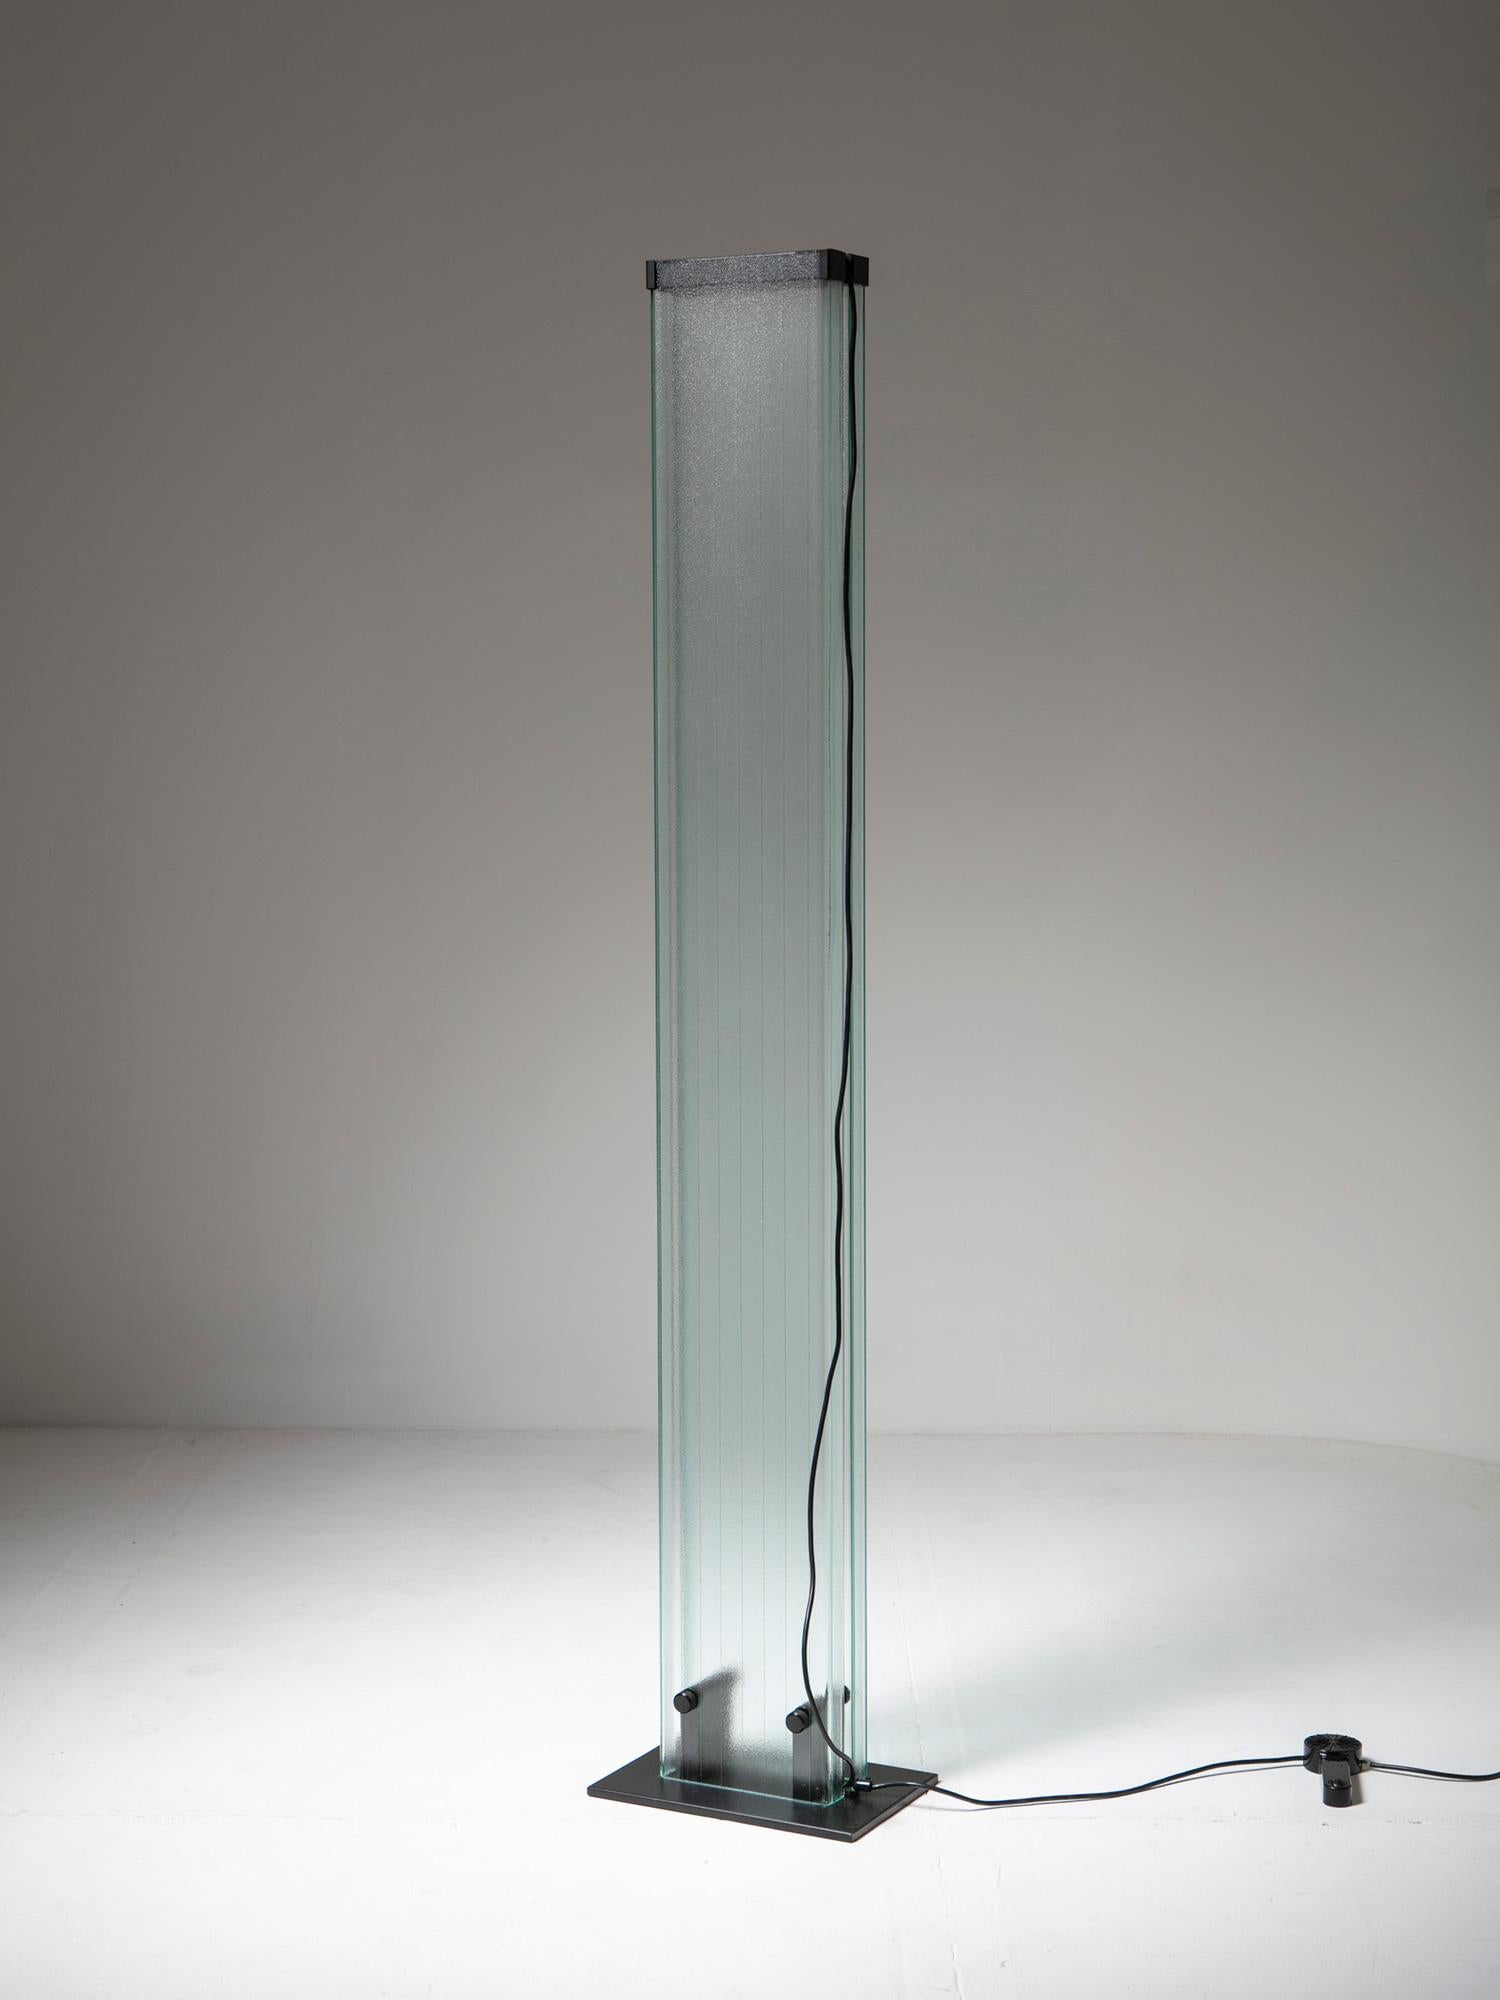 Unsichtbare Stehleuchte von Stilnovo.
Die Halogenlichtquelle wird von zwei großen U-Glasbalken getragen.